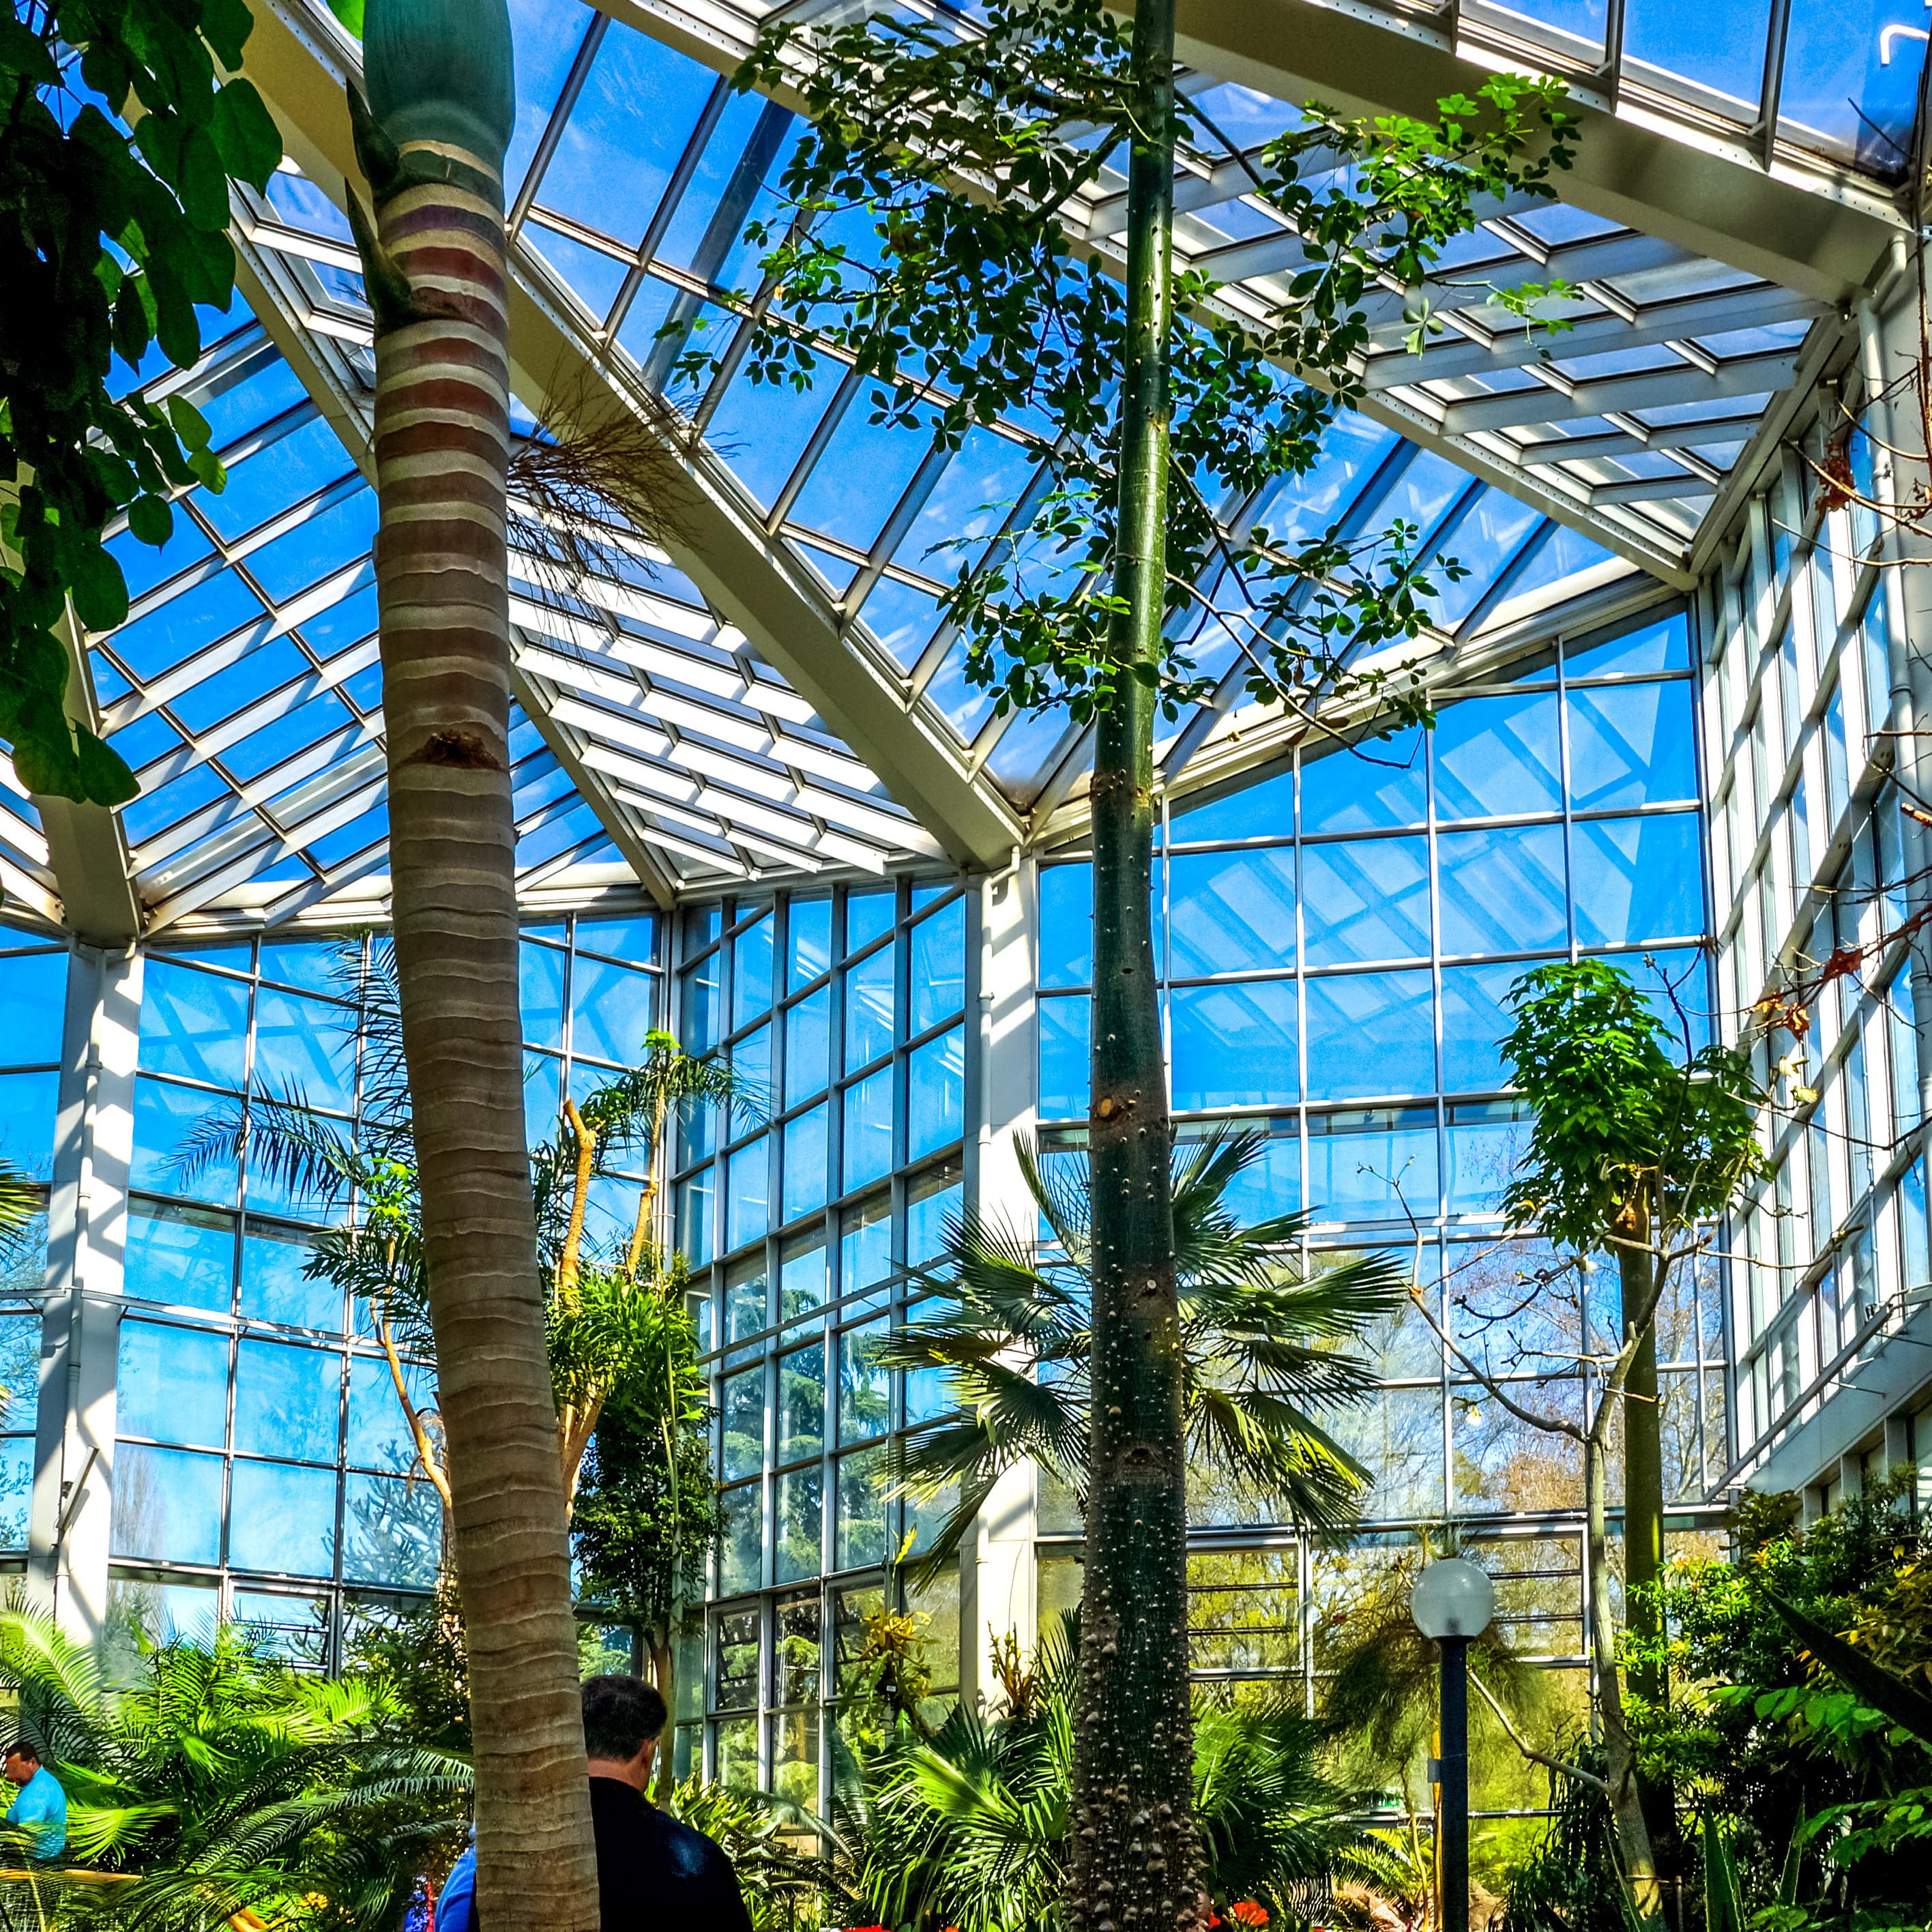 Im Palmengarten in Frankfurt, einige Besucher sind zu sehen.